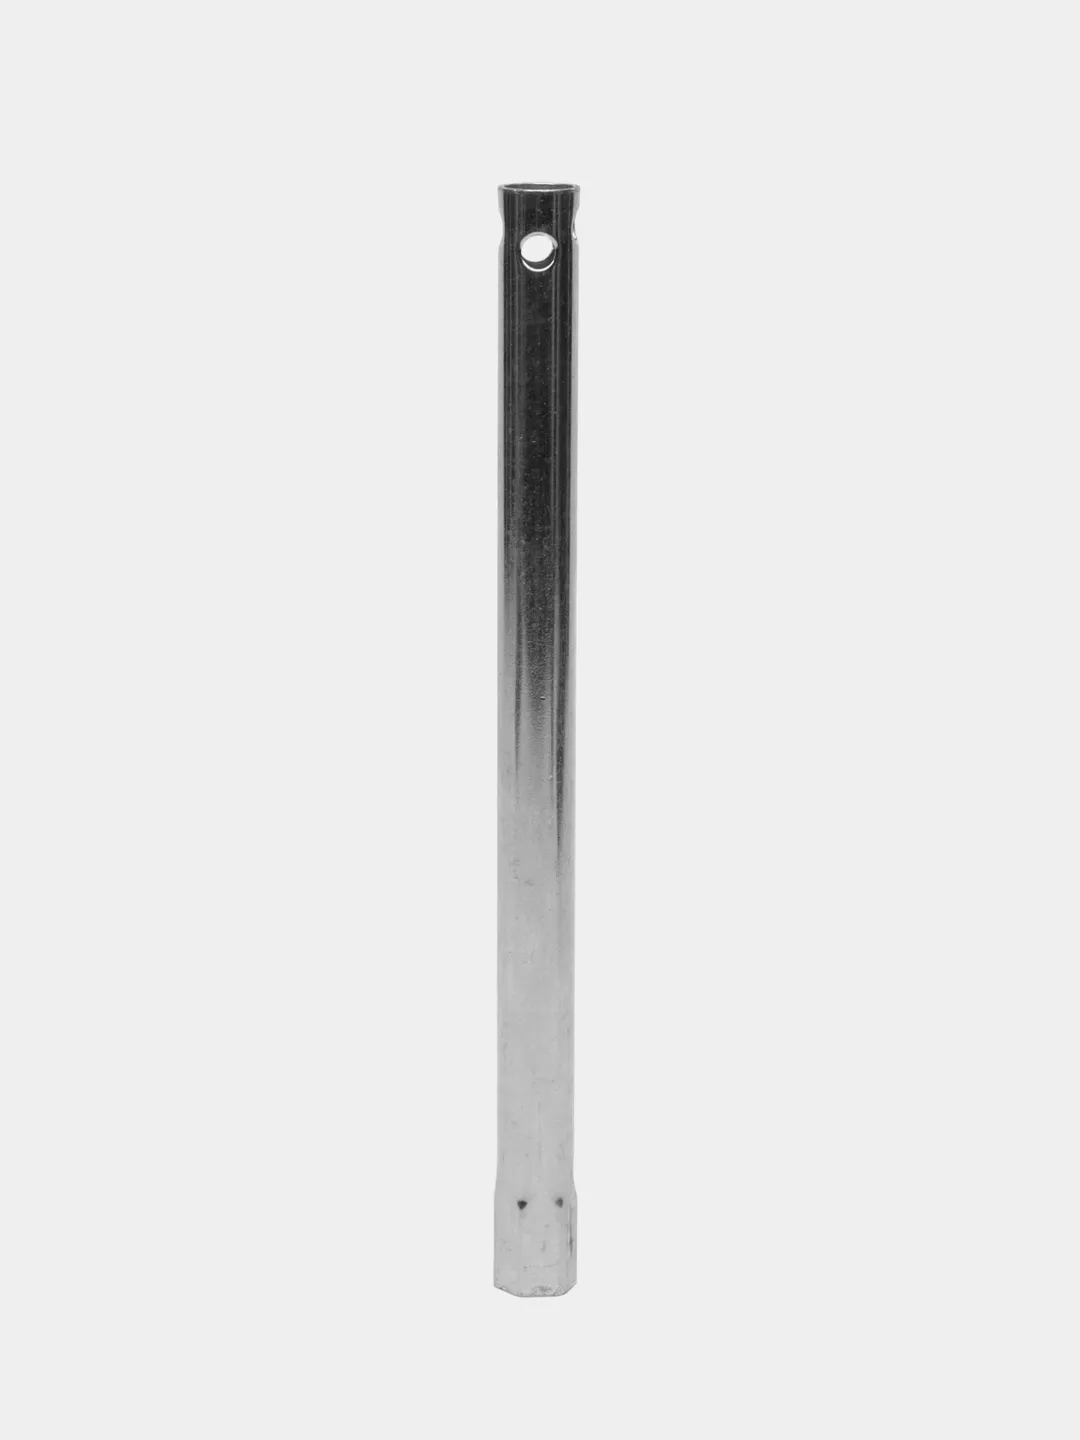 Ключ свечной 16мм*280мм с резиновой вставкой (трубка)  по цене .